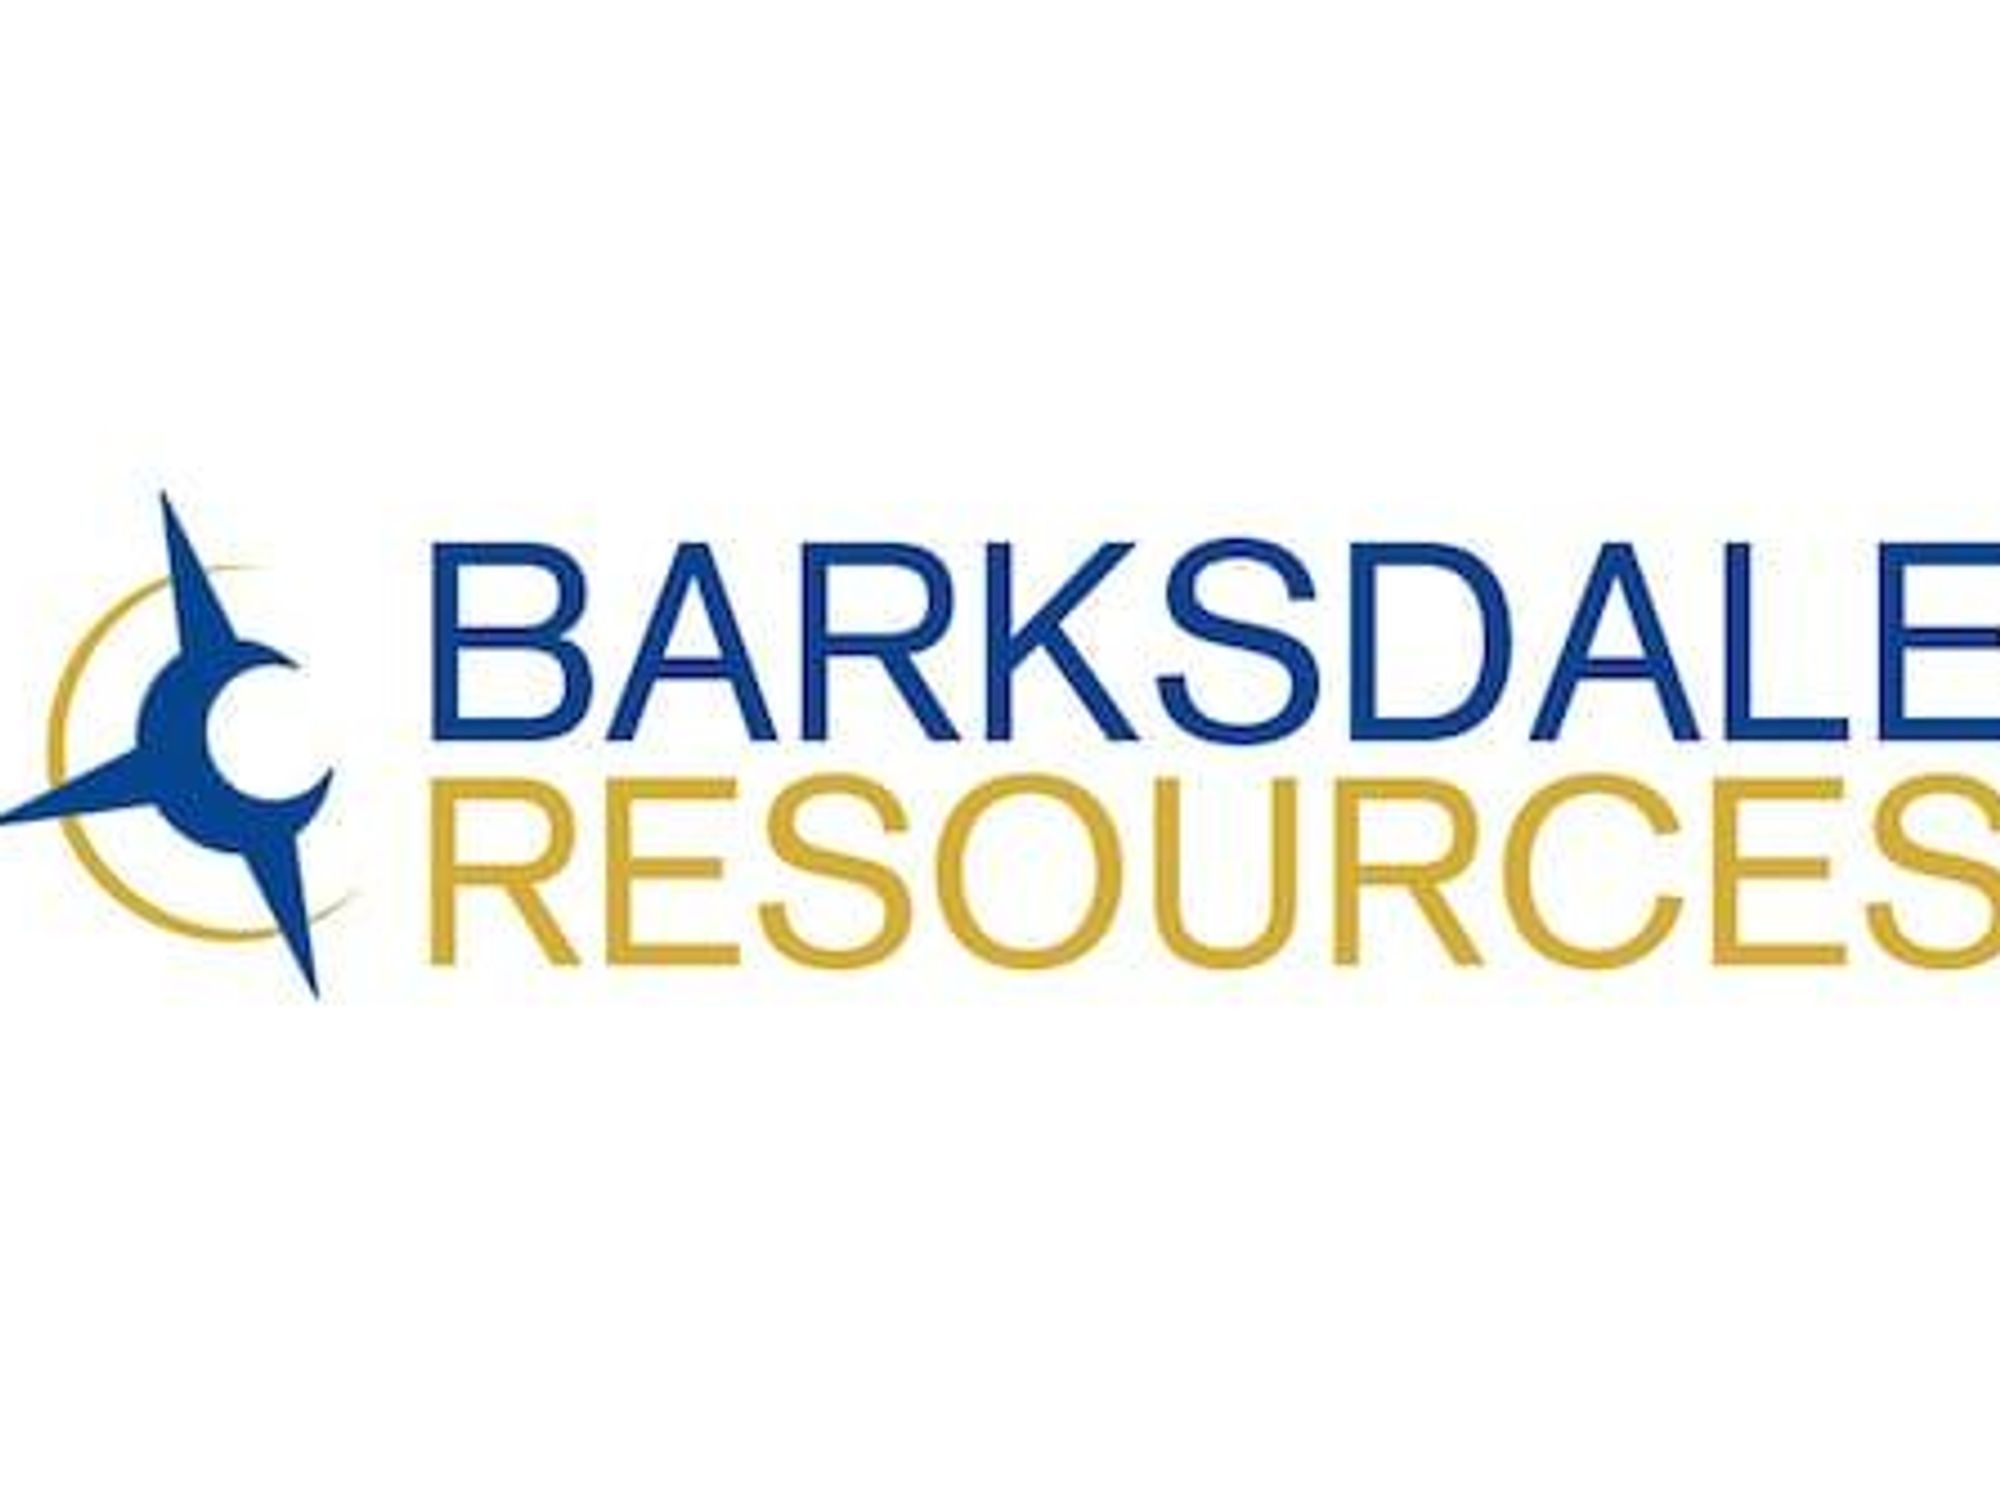 Recursos de Barksdale para transmisión web en vivo en VirtualInvestorConferences.com el 2 de mayo